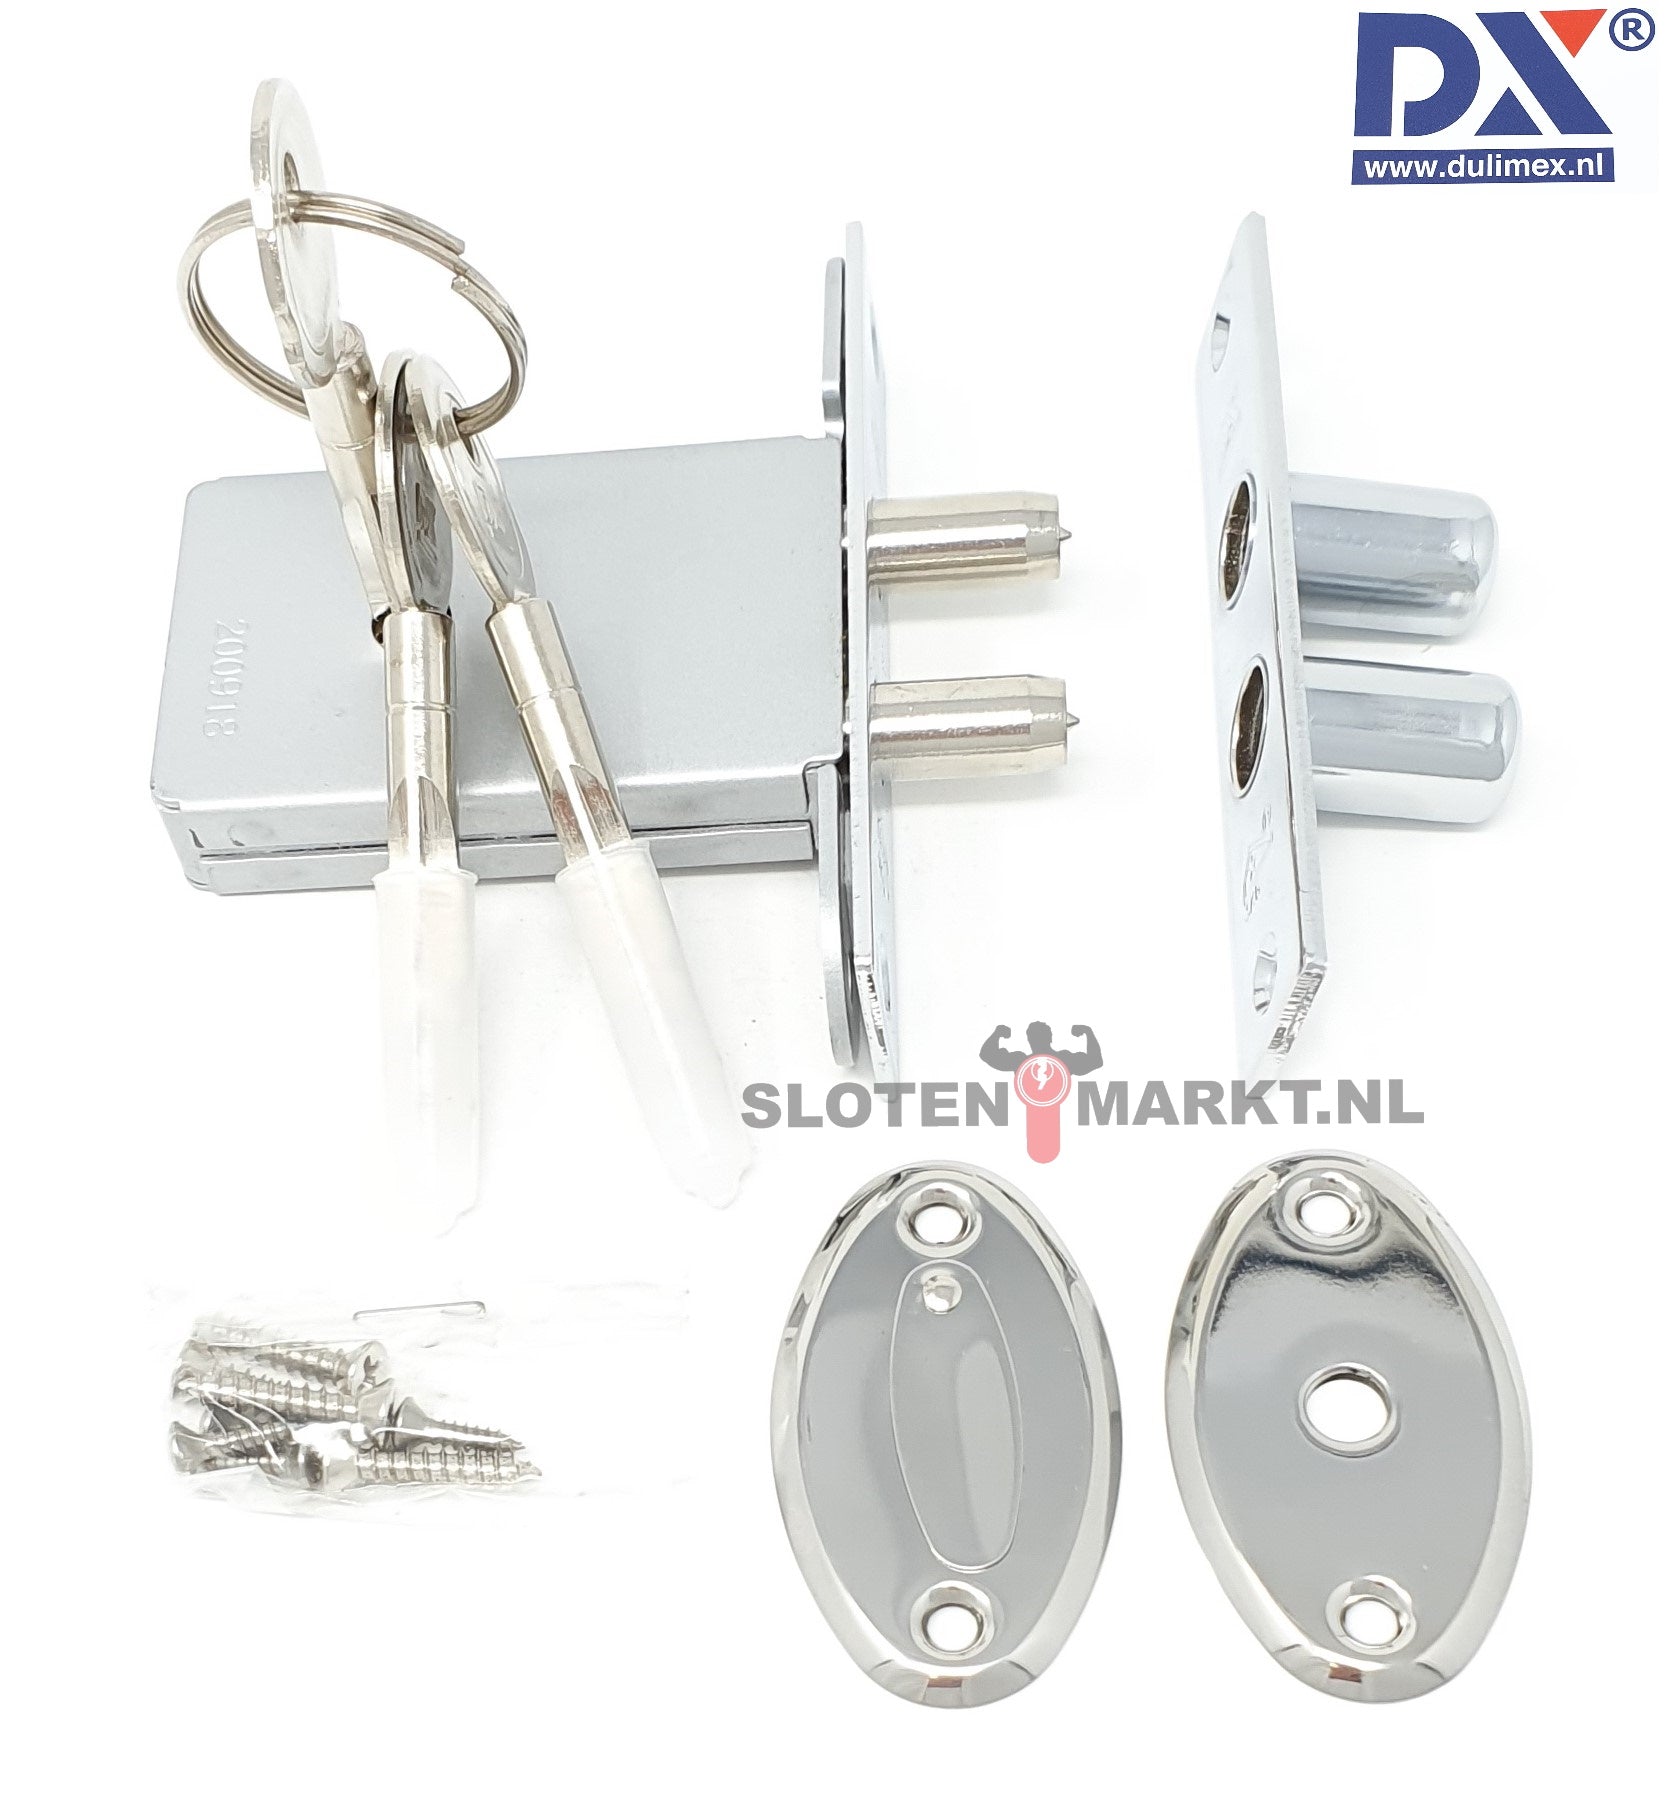 Penslot DX SKG**® DM50 incl. sluitkom en 3 sleutels Per 3 GLS